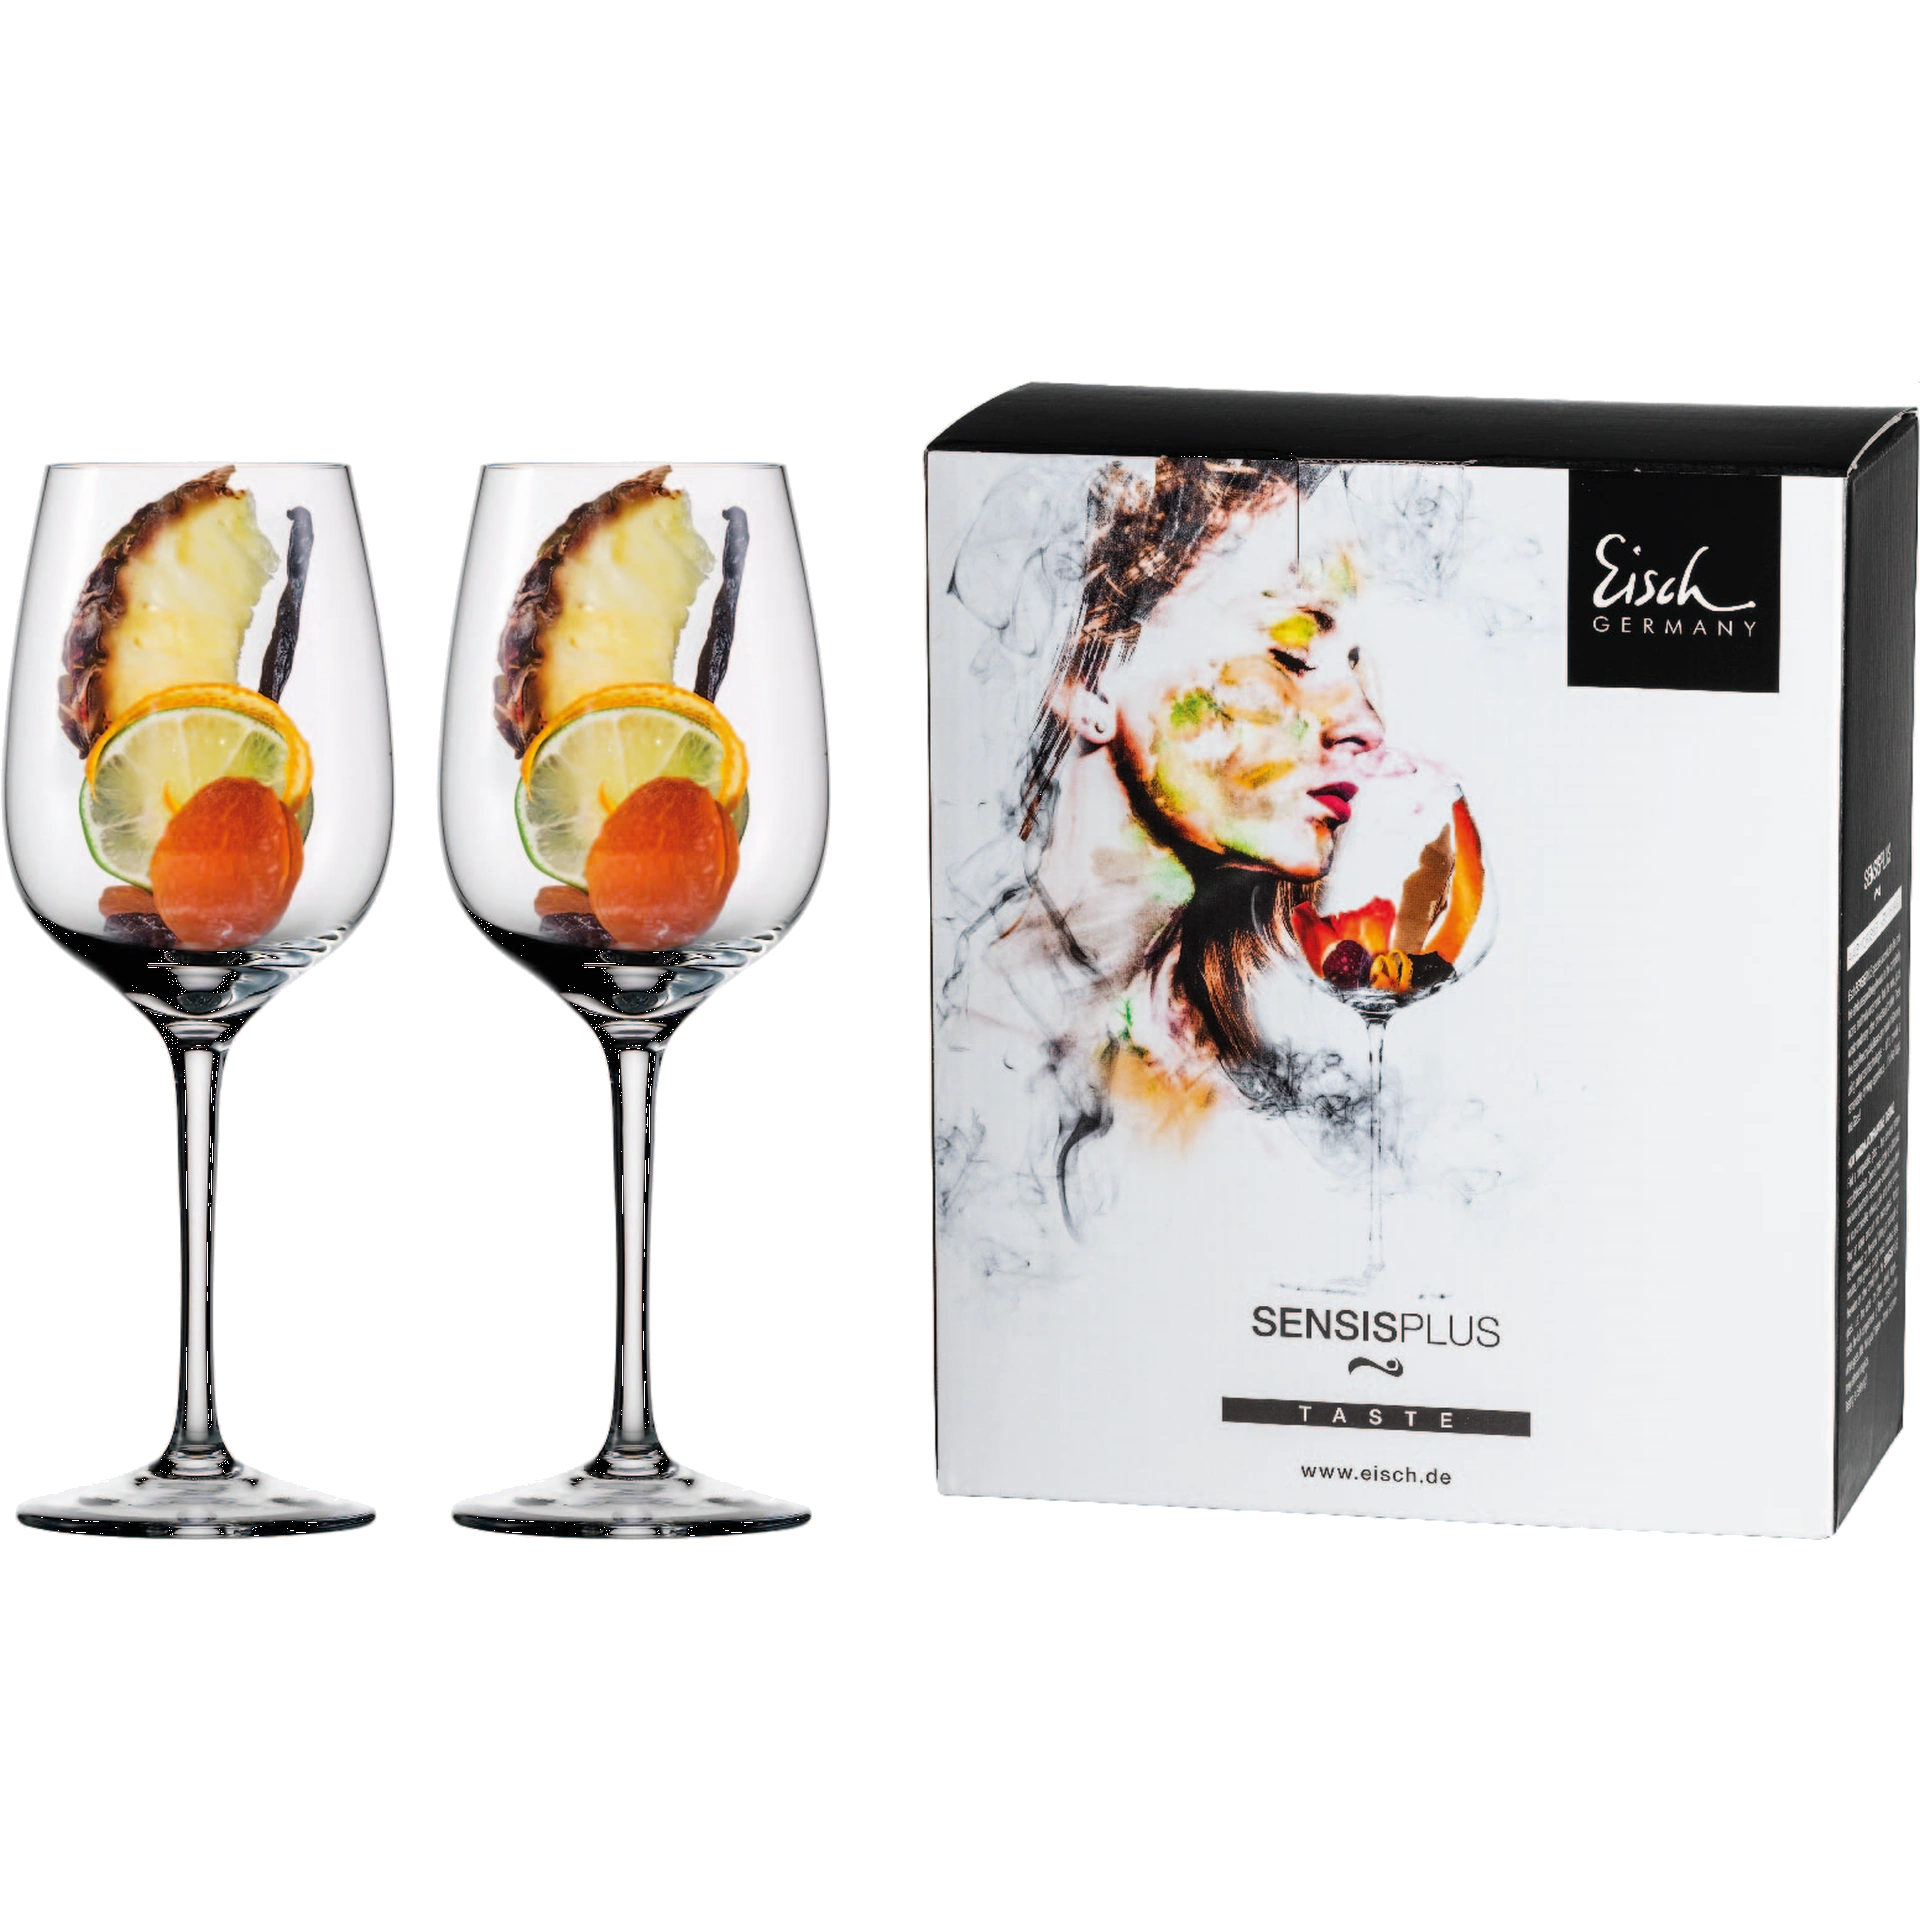 Eisch Chardonnay Glas Superior SENSISPLUS - 2 Stück im Geschenkkarton 500/31 mit Aromen